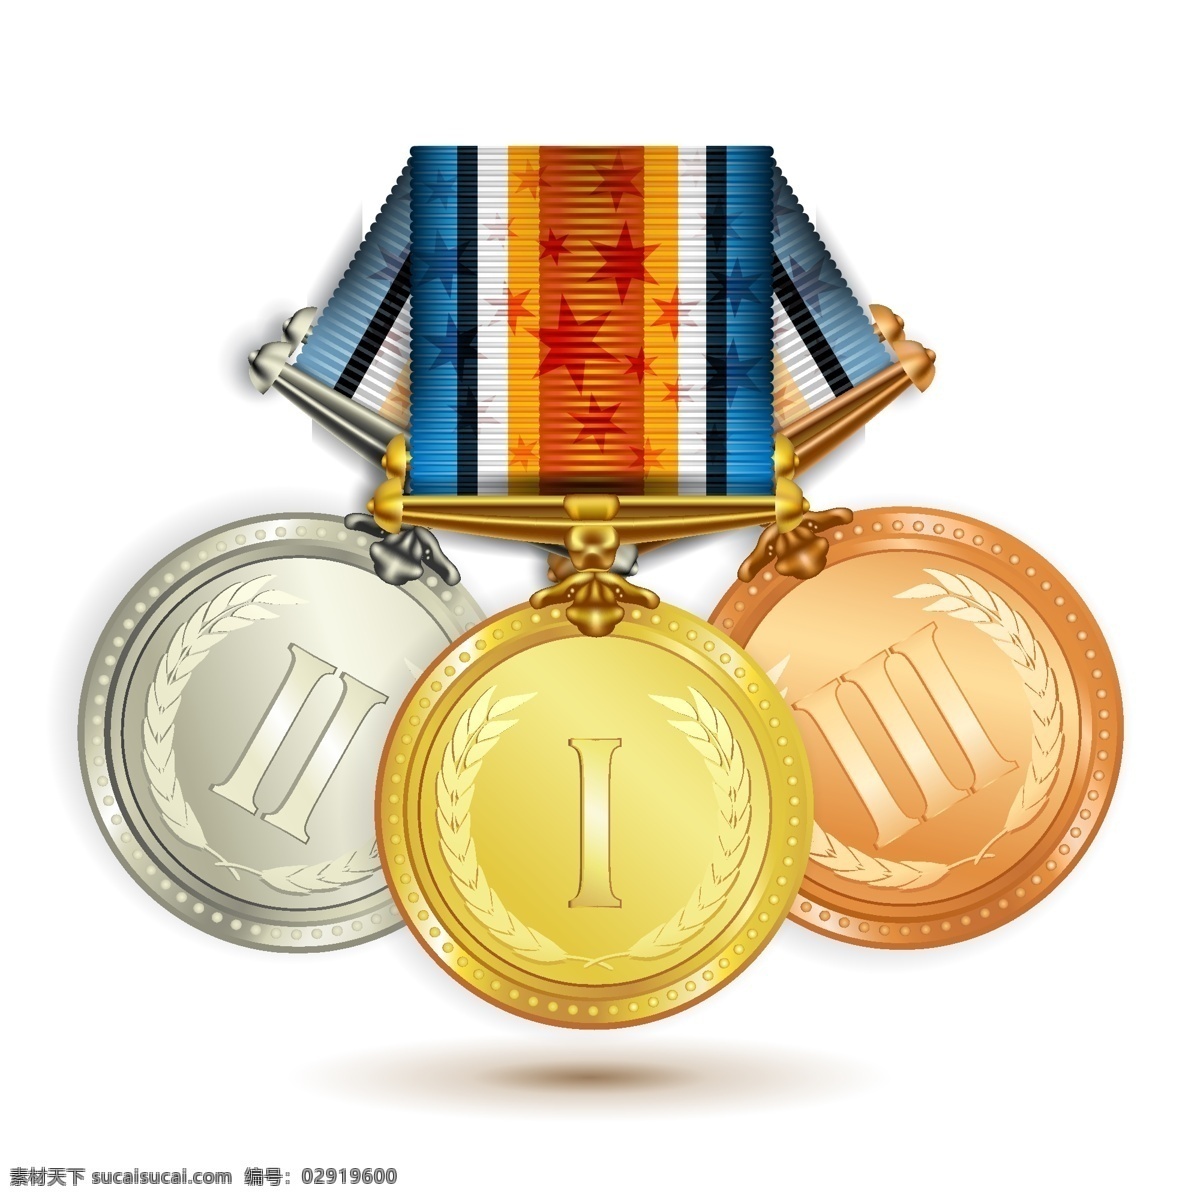 奖牌设计 奖牌 奖章 数字标签 信息 荣誉 金属质感 名次 矢量素材 白色